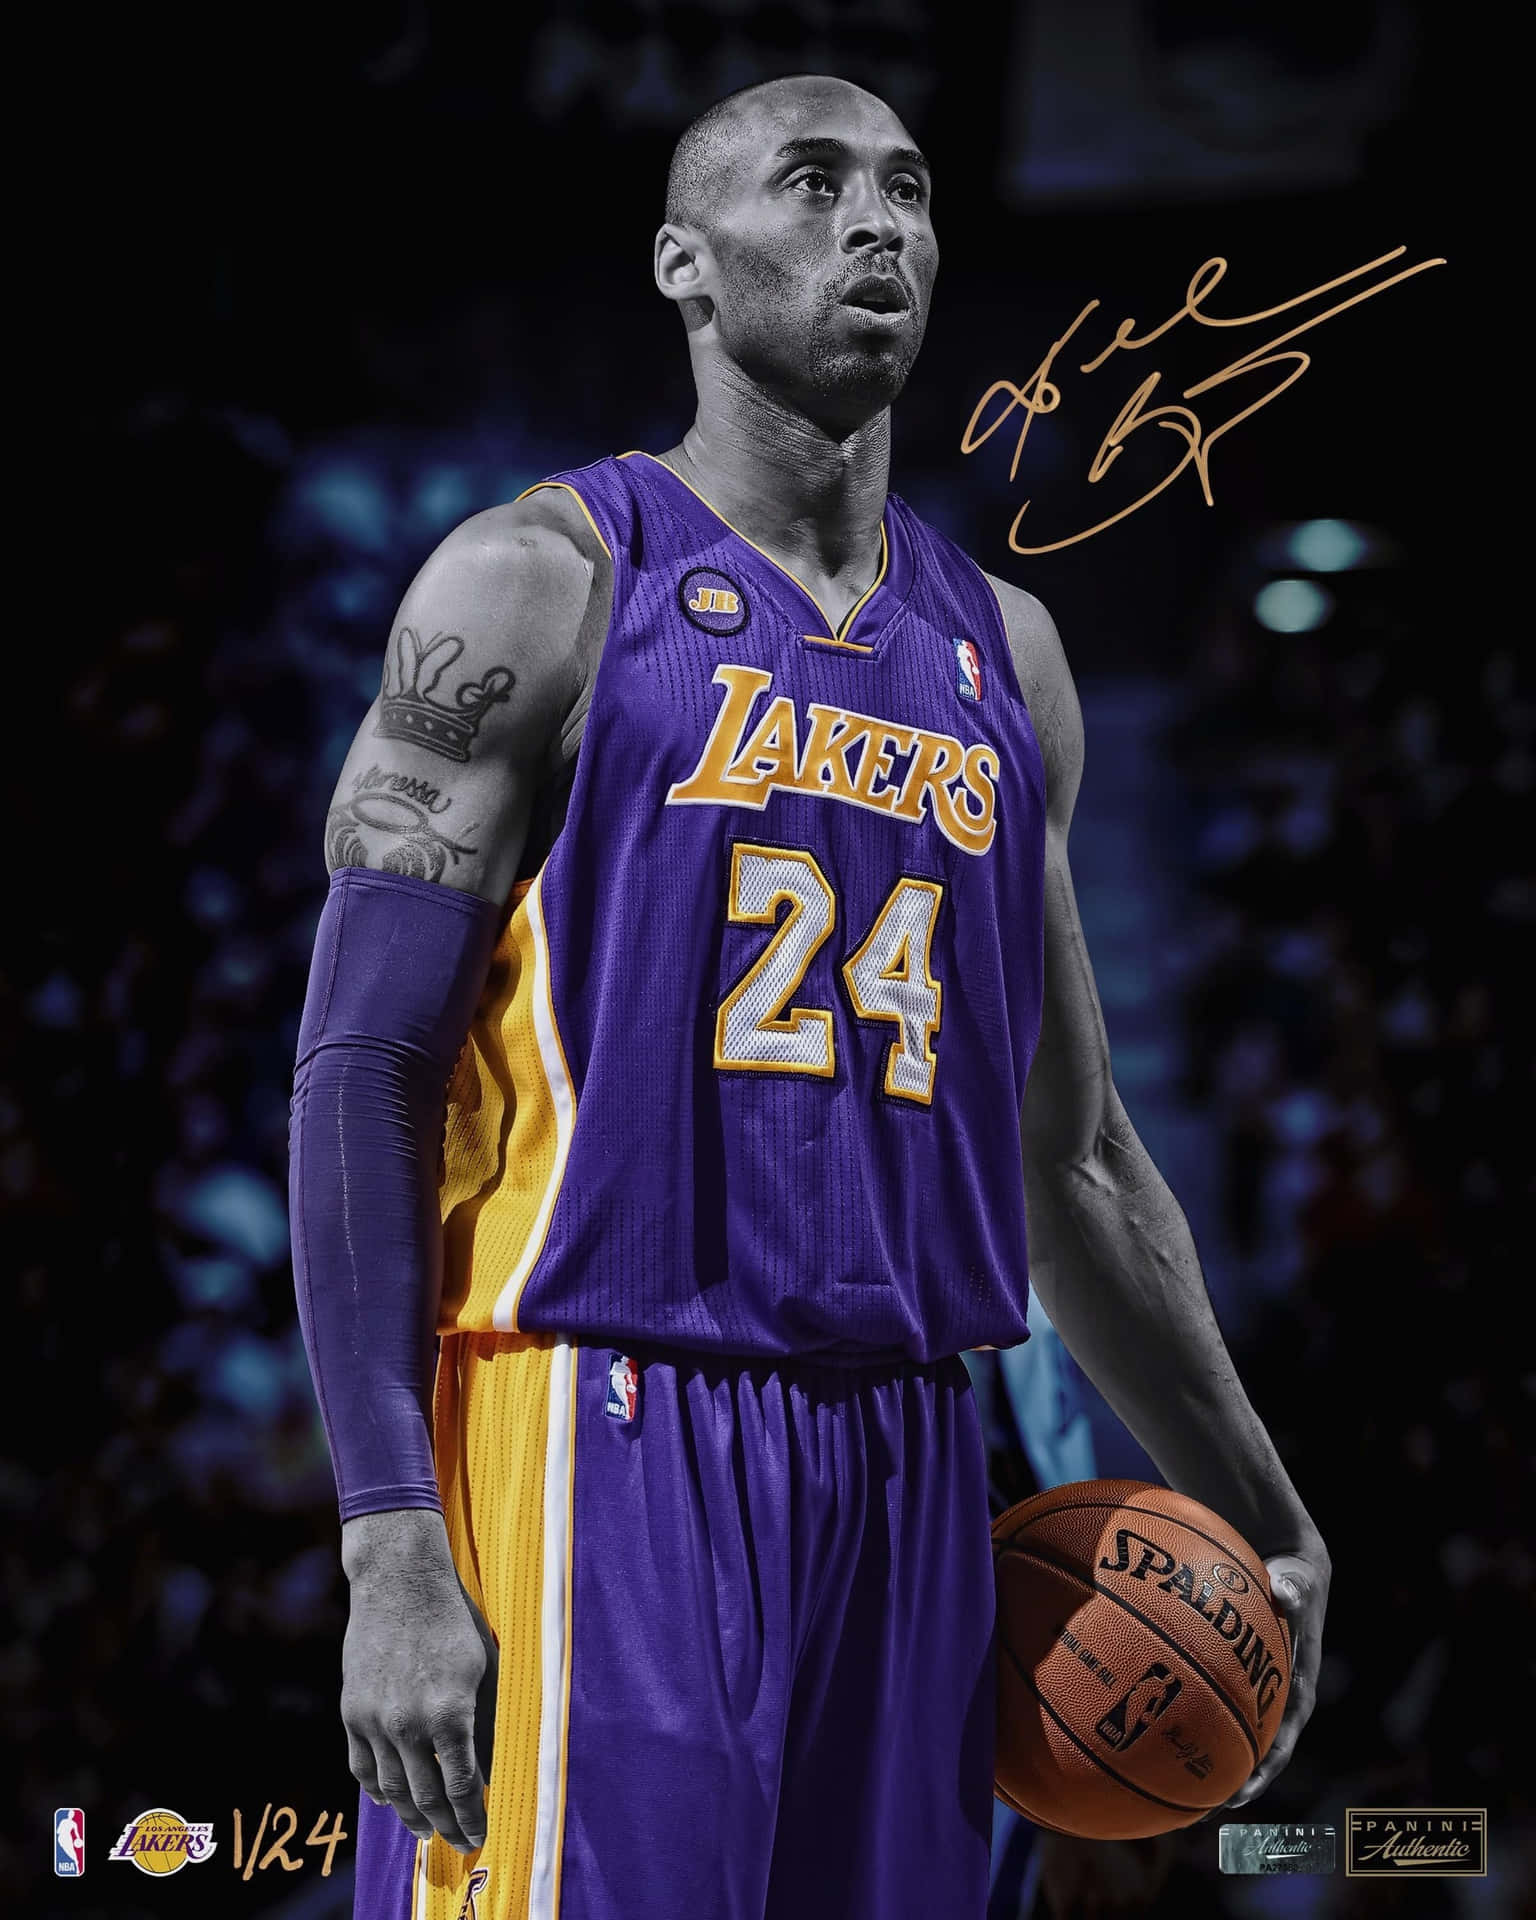 Einehommage An Die Basketball-legende Kobe Bryant